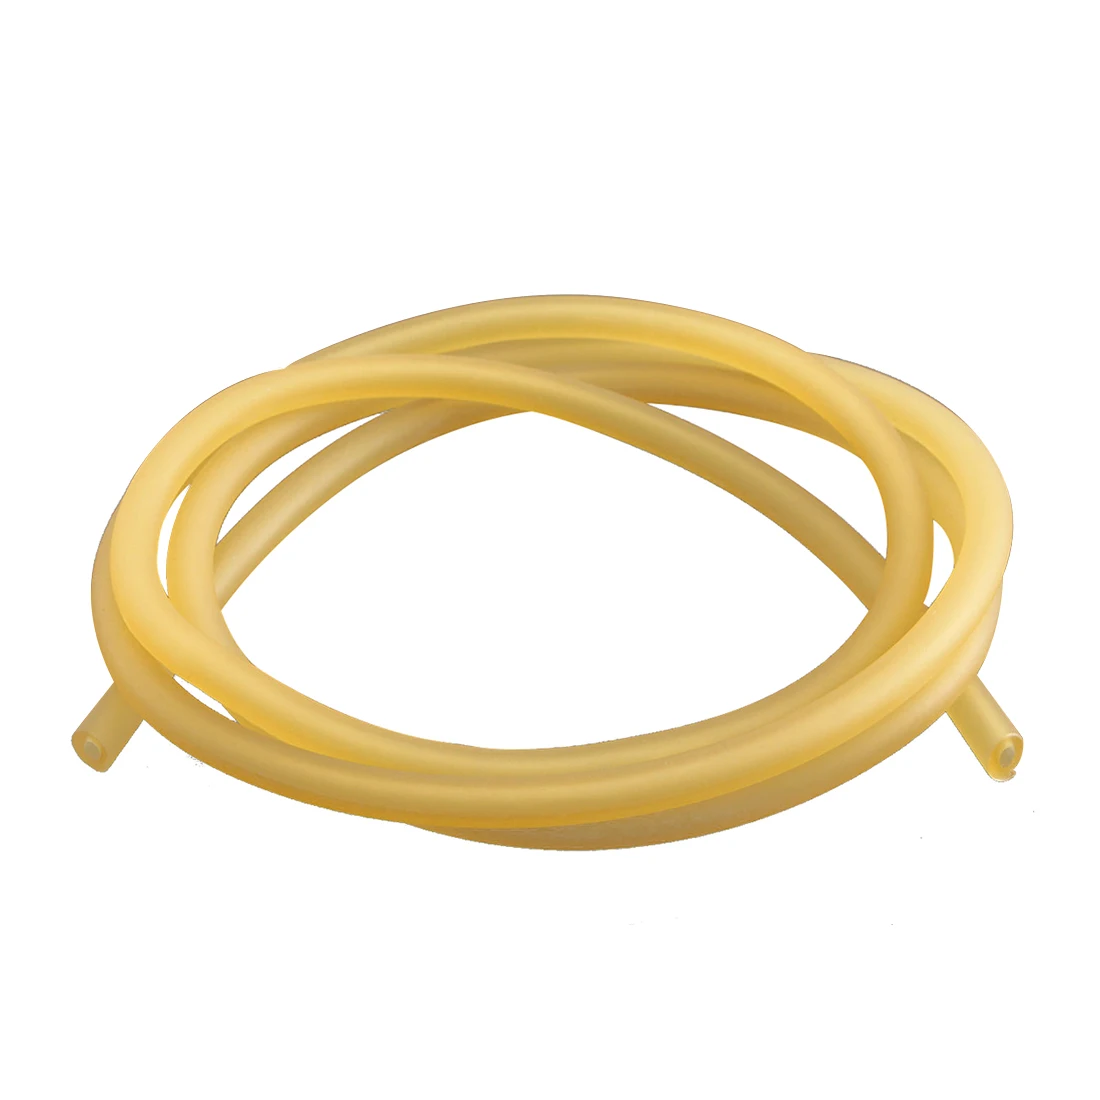 Супер продаж-натуральная латексная резина Хирургическая лента трубка эластичная 2x5 мм желтый